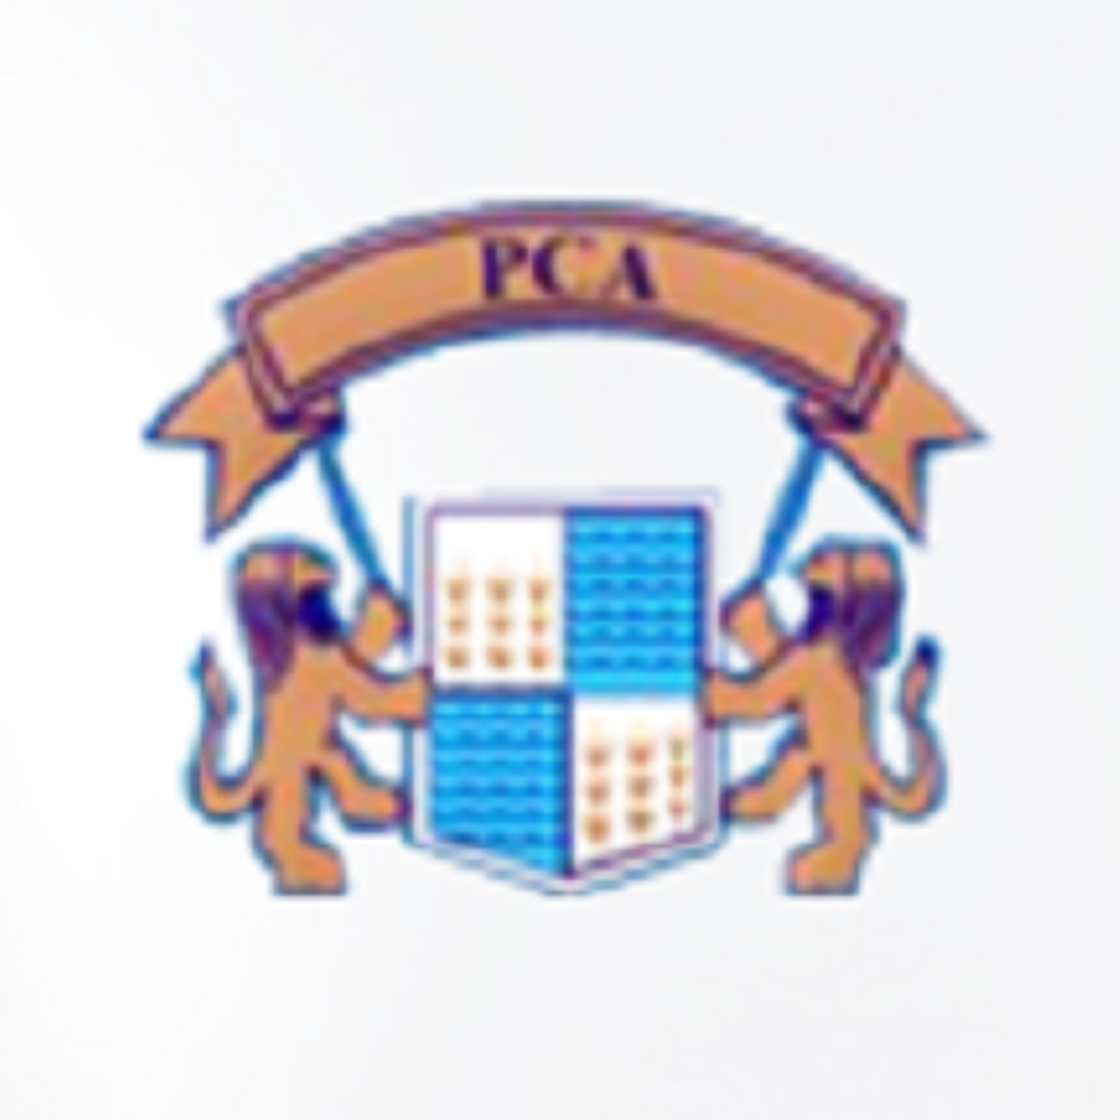 Punjab team logo